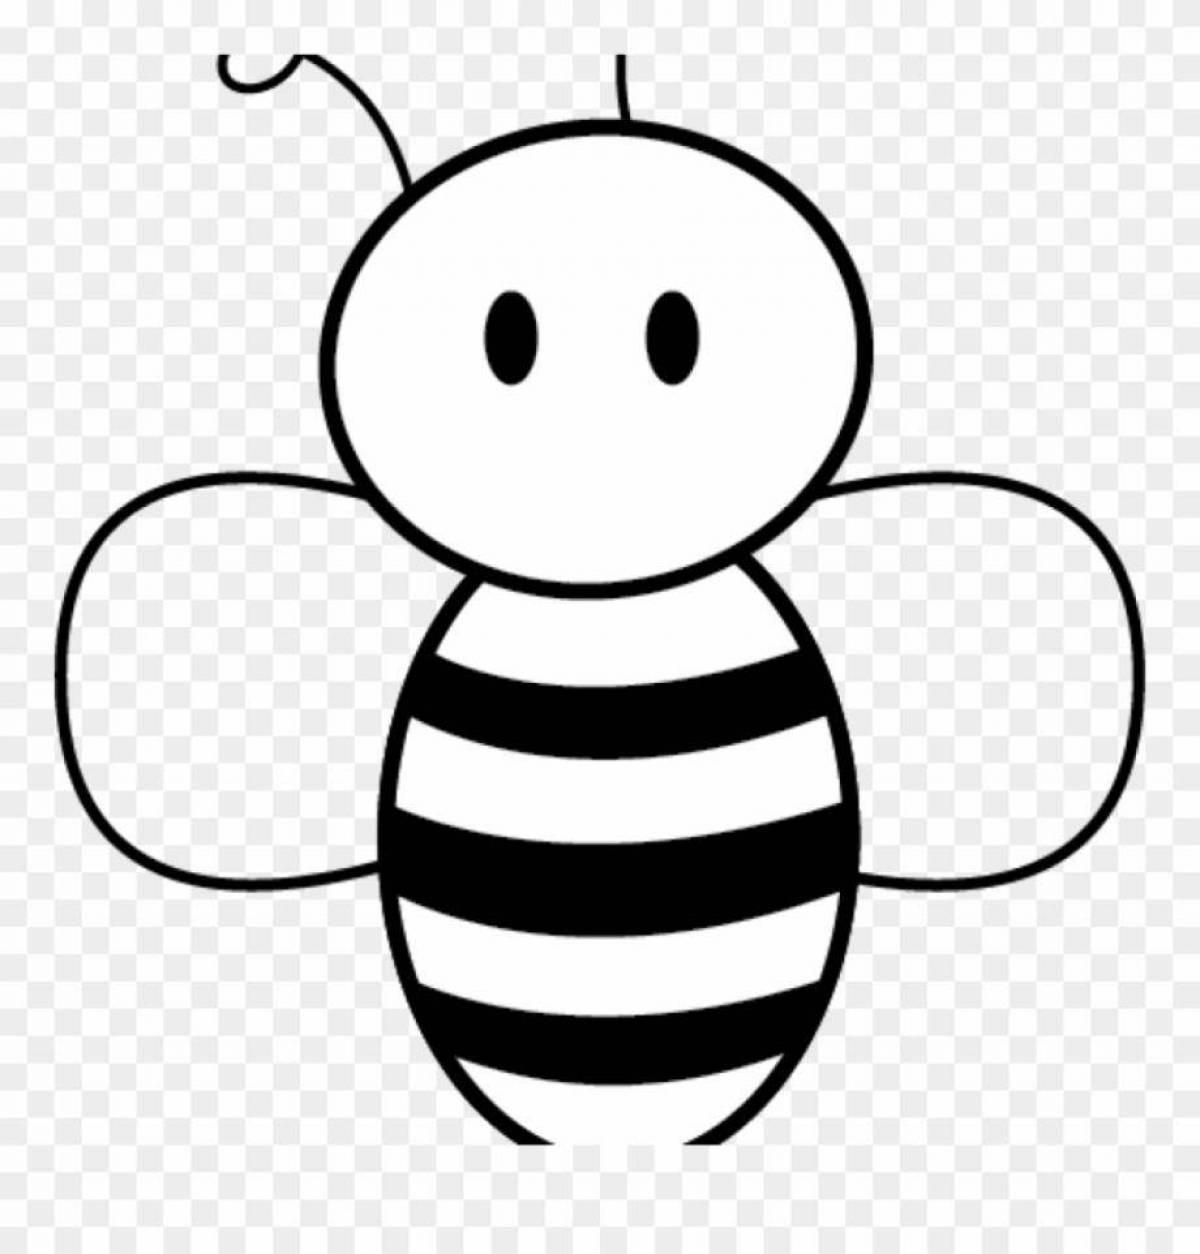 Раскраска пчёлка для детей